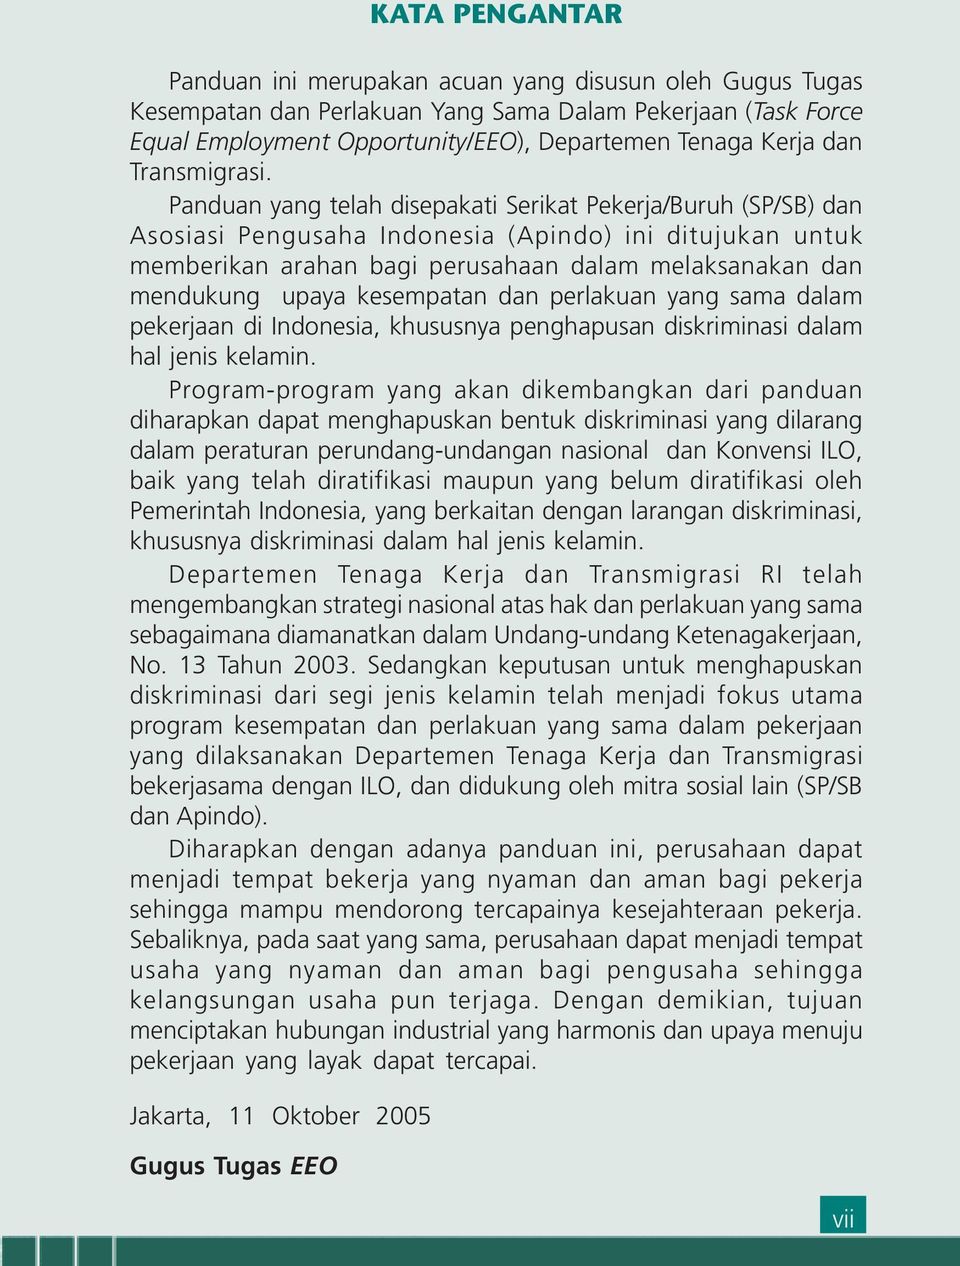 Panduan yang telah disepakati Serikat Pekerja/Buruh (SP/SB) dan Asosiasi Pengusaha Indonesia (Apindo) ini ditujukan untuk memberikan arahan bagi perusahaan dalam melaksanakan dan mendukung upaya